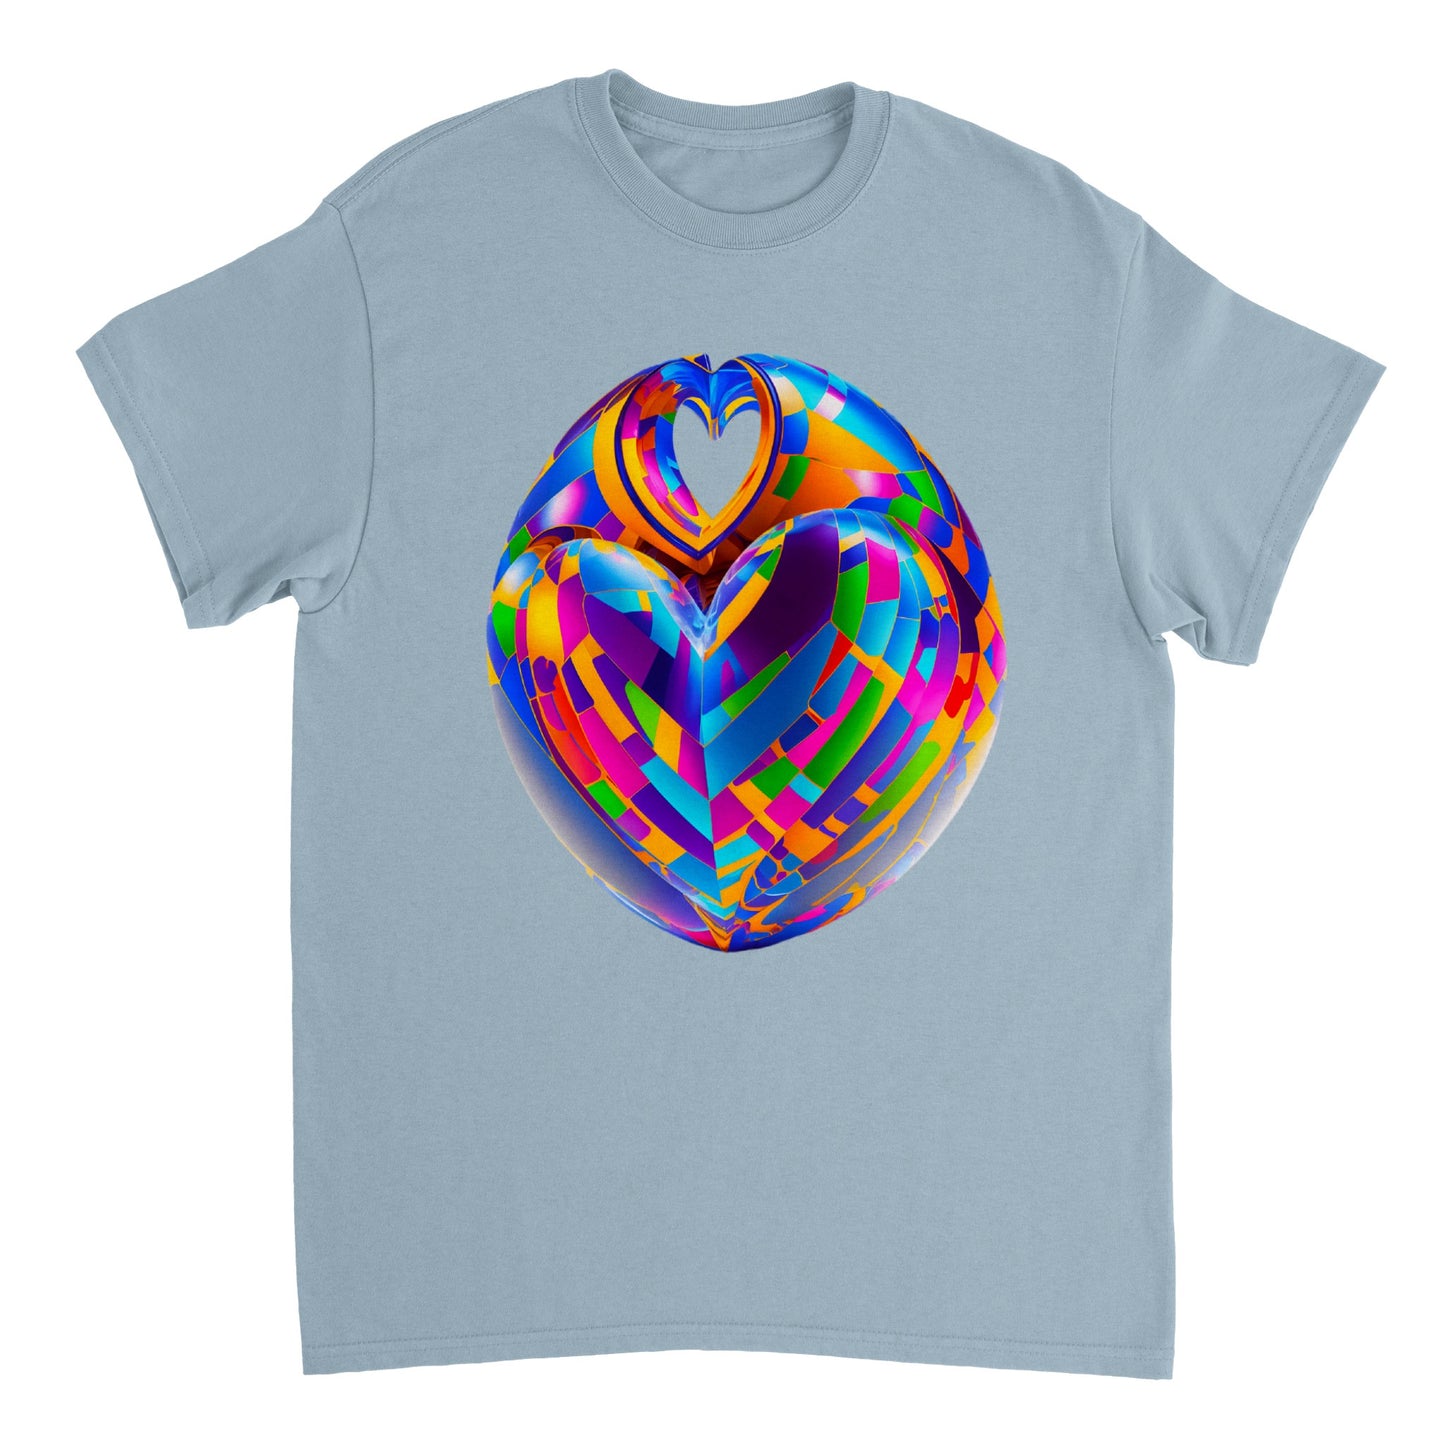 Love Heart - Heavyweight Unisex Crewneck T-shirt 43